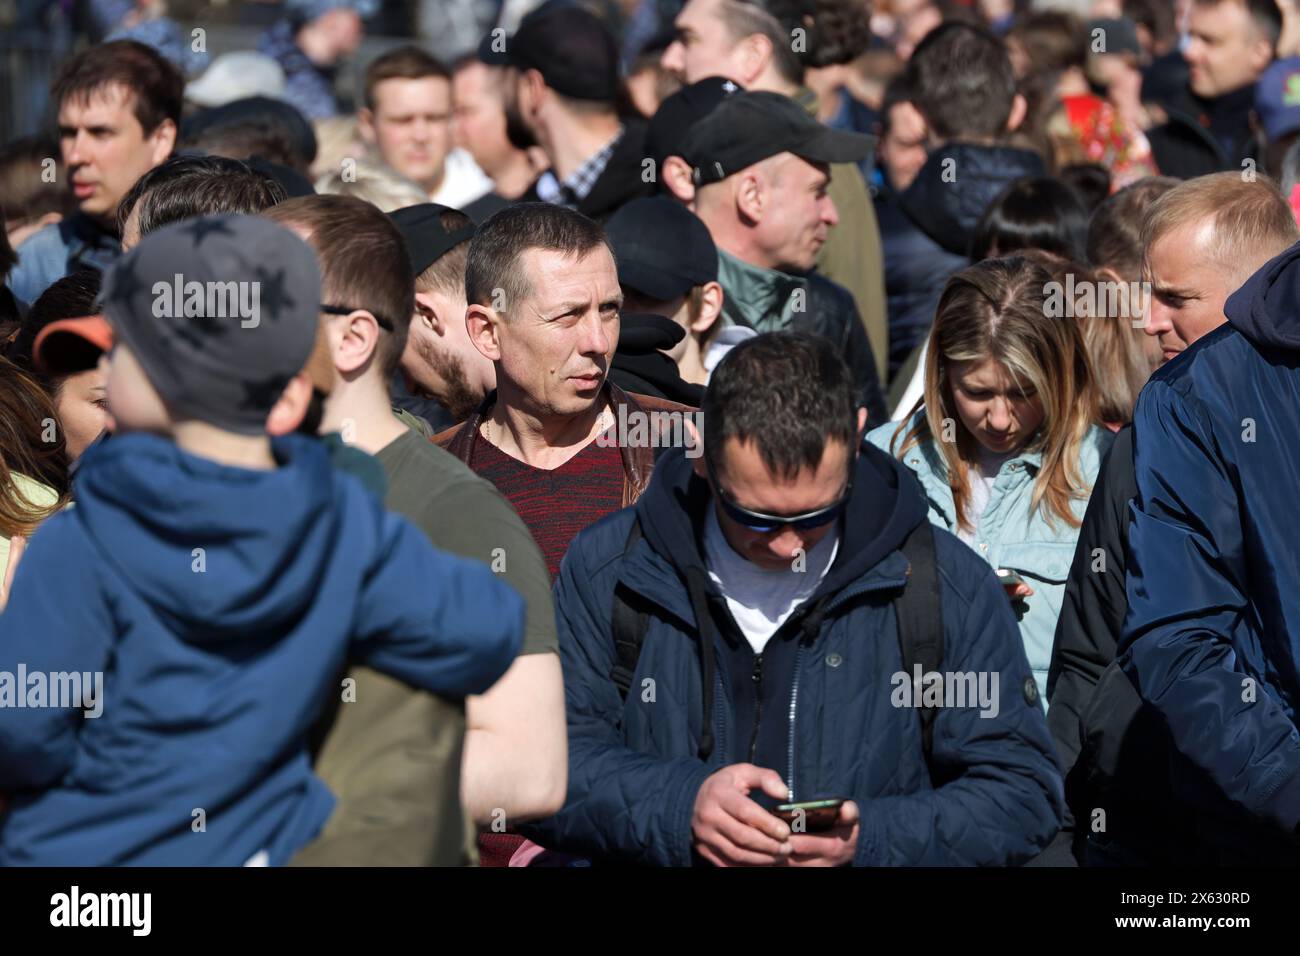 Folla di persone che camminano per una strada, turisti nella città primaverile Foto Stock